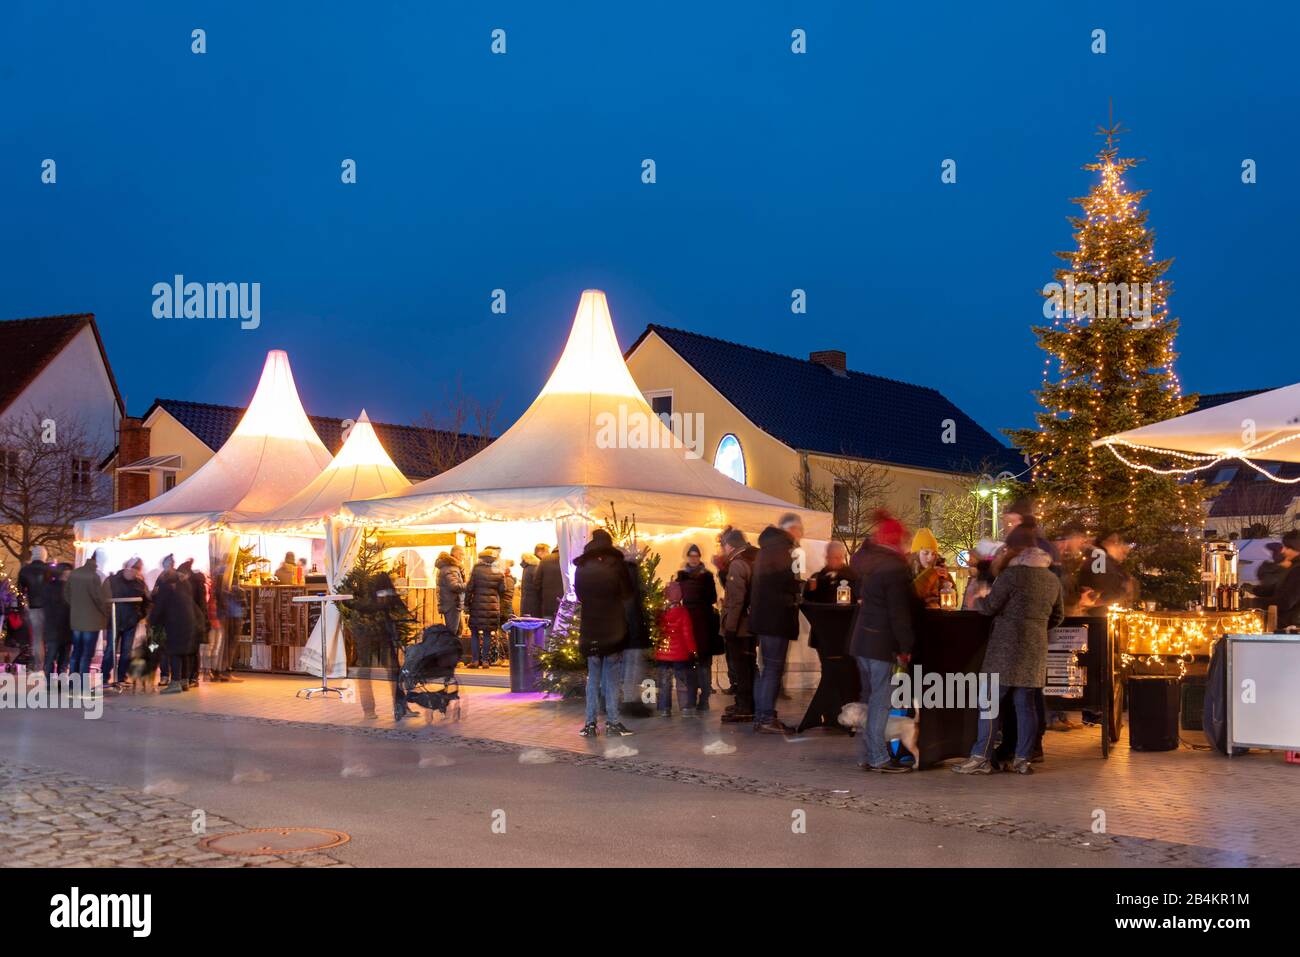 Germania, Meclemburgo-Pomerania anteriore, Zingst, mercato invernale, albero di Natale, turisti, tende Foto Stock